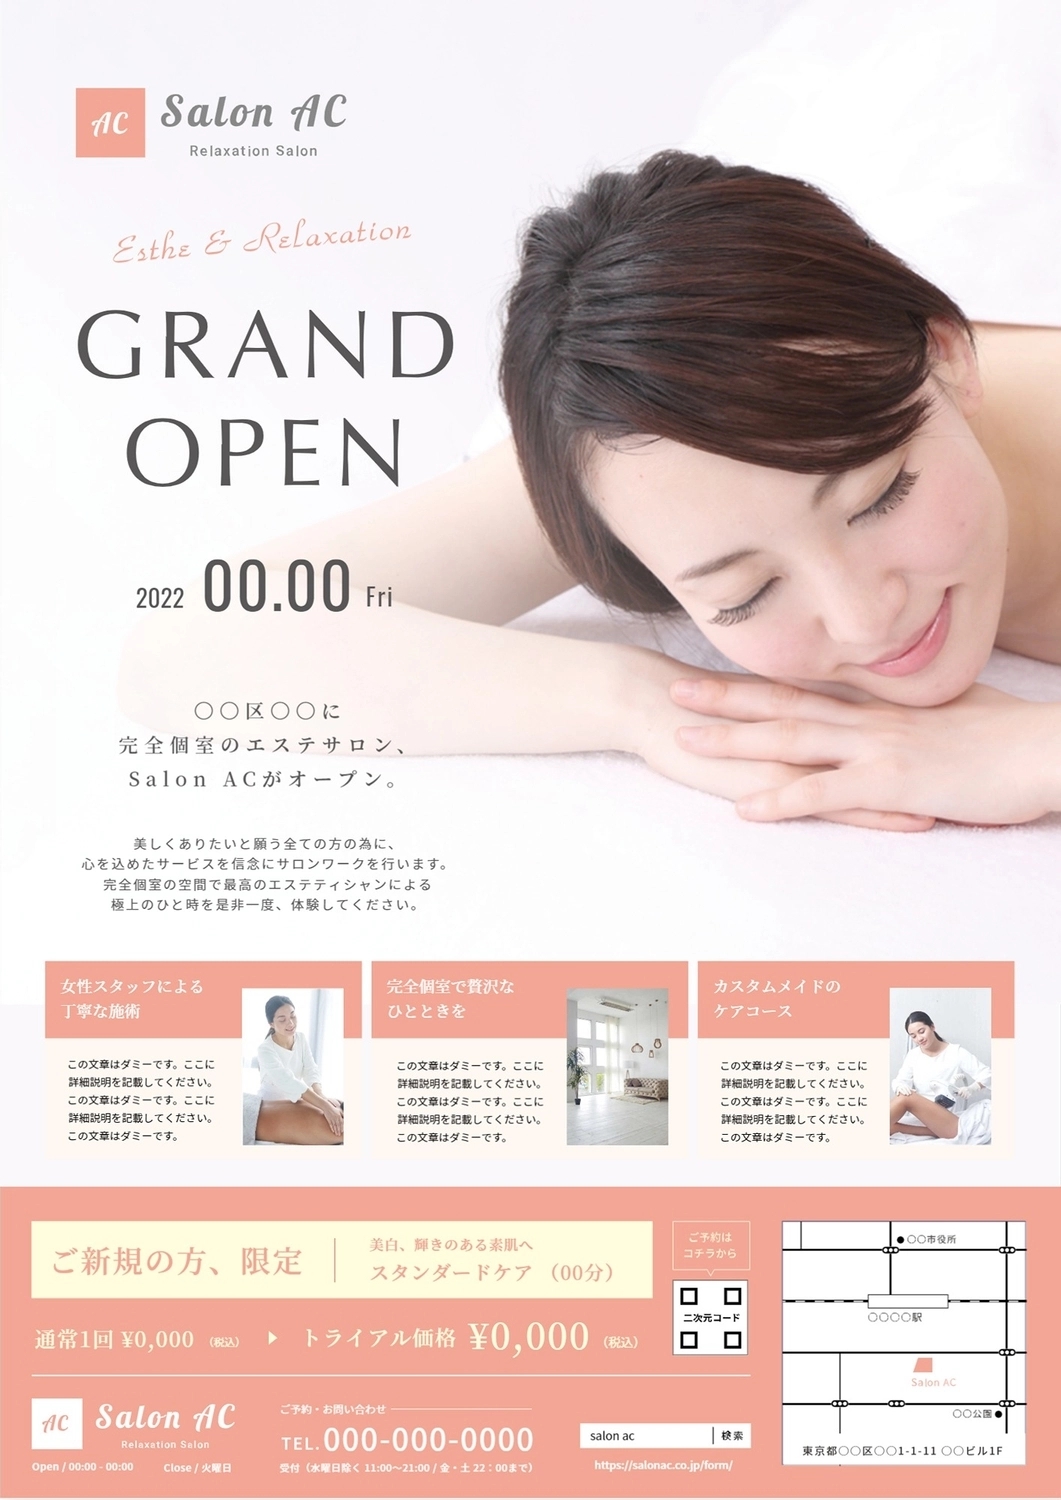 グランドオープンのサロン（日本人女性の写真）, 横書き, 施術者, 部屋, チラシテンプレート